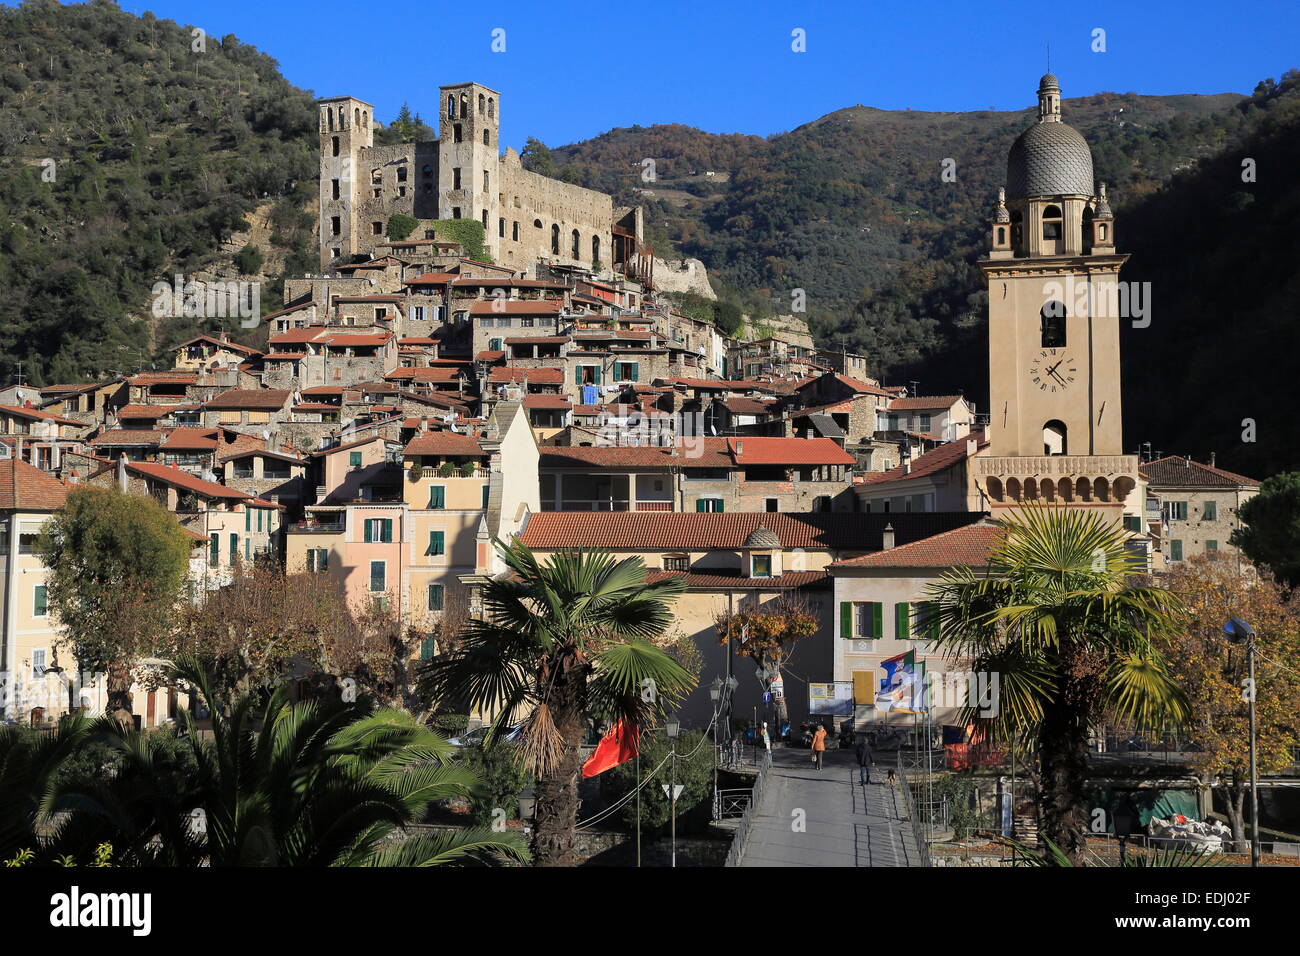 Mittelalterliche Dorf von Dolceaqua, Provinz Imperia, Ligurien, italienische Riviera, Italien Stockfoto